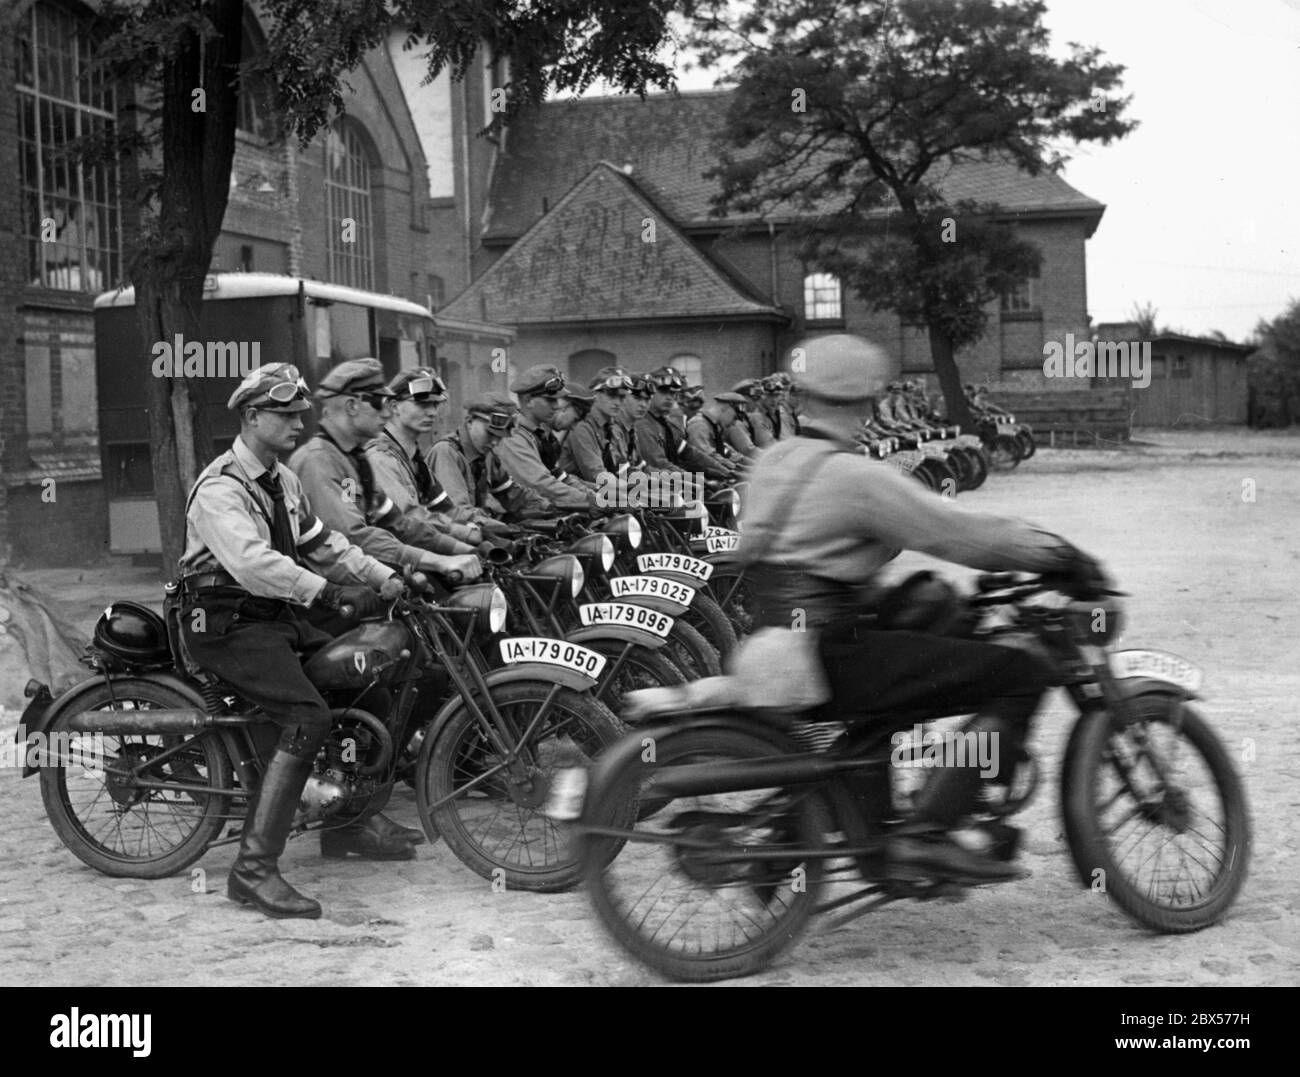 Eine Gruppe der Motor-Hitler-Jugend steht auf ihren Motorrädern an und ist dabei, Lichterfelde nach Goslar zu verlassen. Die Motorräder, auf denen sie sitzen, sind vom Typ DKW RT 98 ccm. Im Hintergrund befindet sich eine Wasserpumpstation. Stockfoto